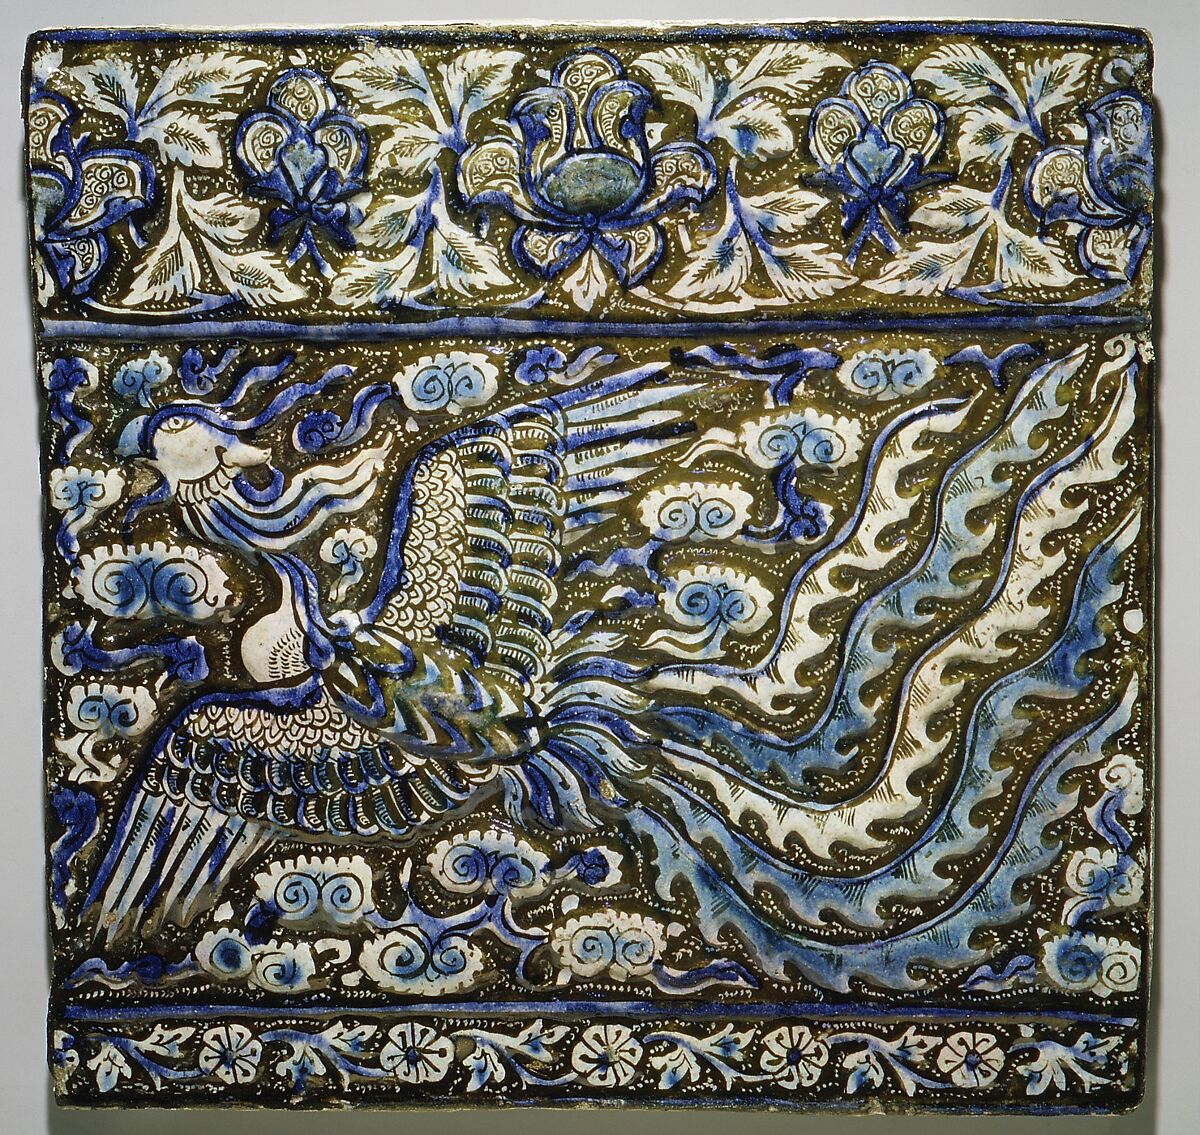 【イラン「鳳凰タイル Tile with Image of Phoenix」】